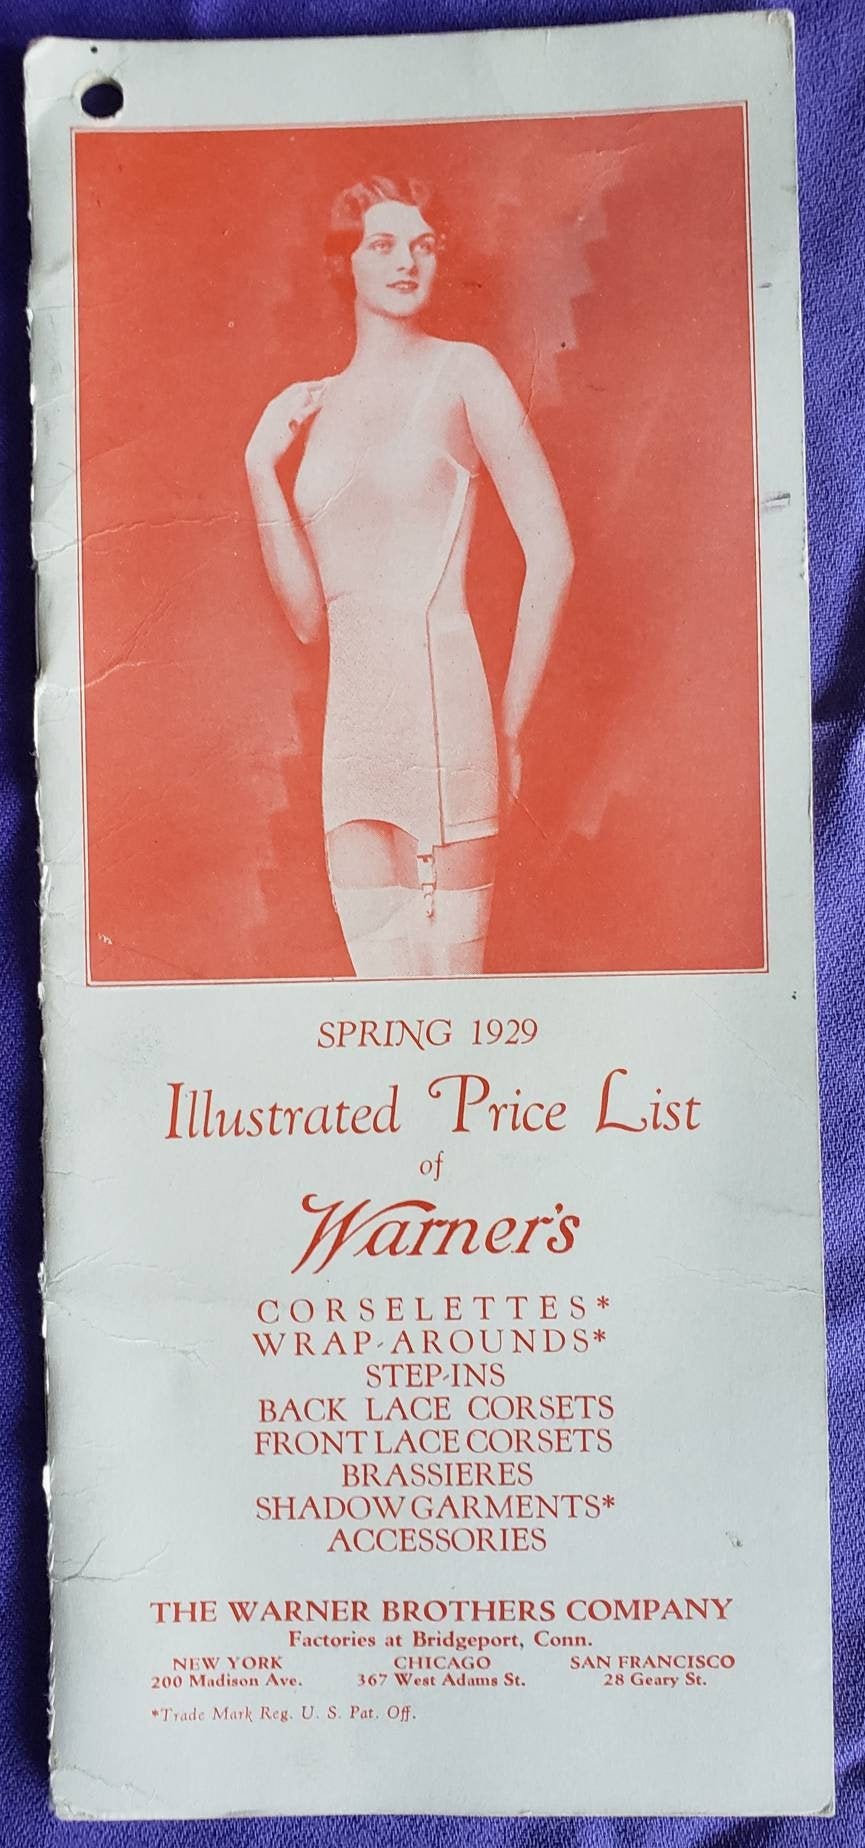 1957 women's sta- flat high waist girdle by Warner's vintage